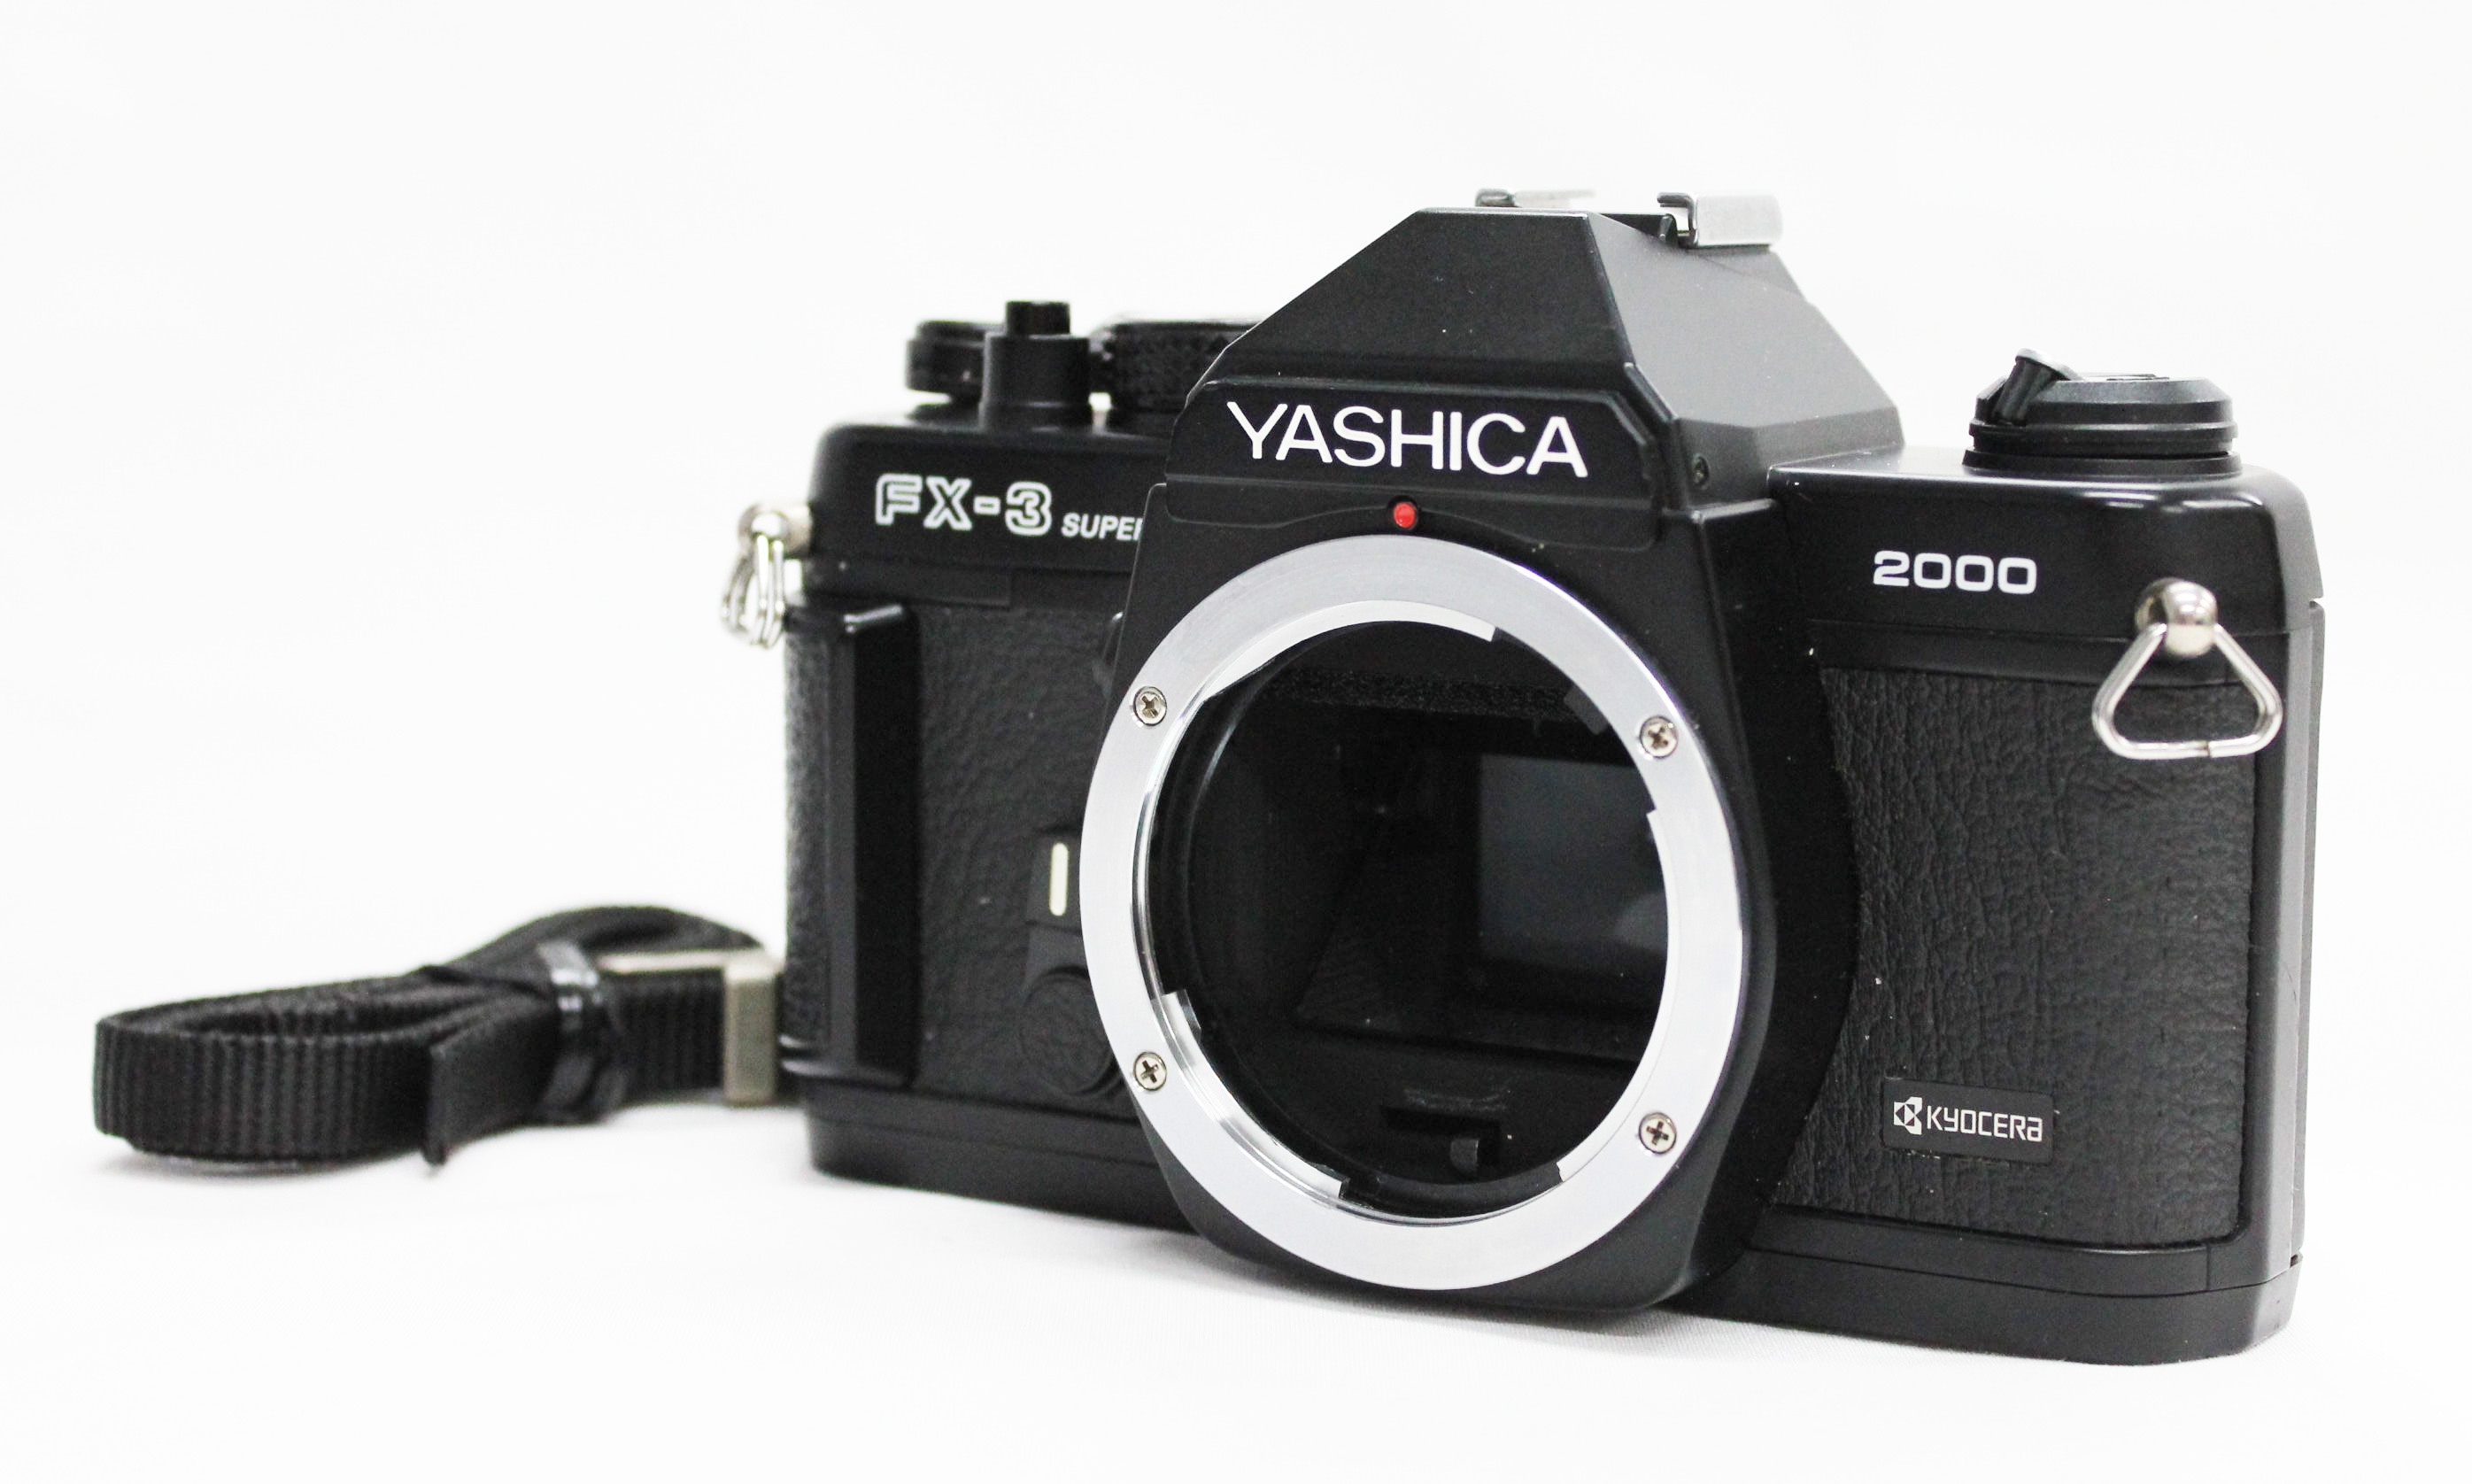 Japan Used Camera Shop | [Excellent+++++] Kyocera Yashica FX-3 Super 2000 35mm SLR Film Camera from Japan